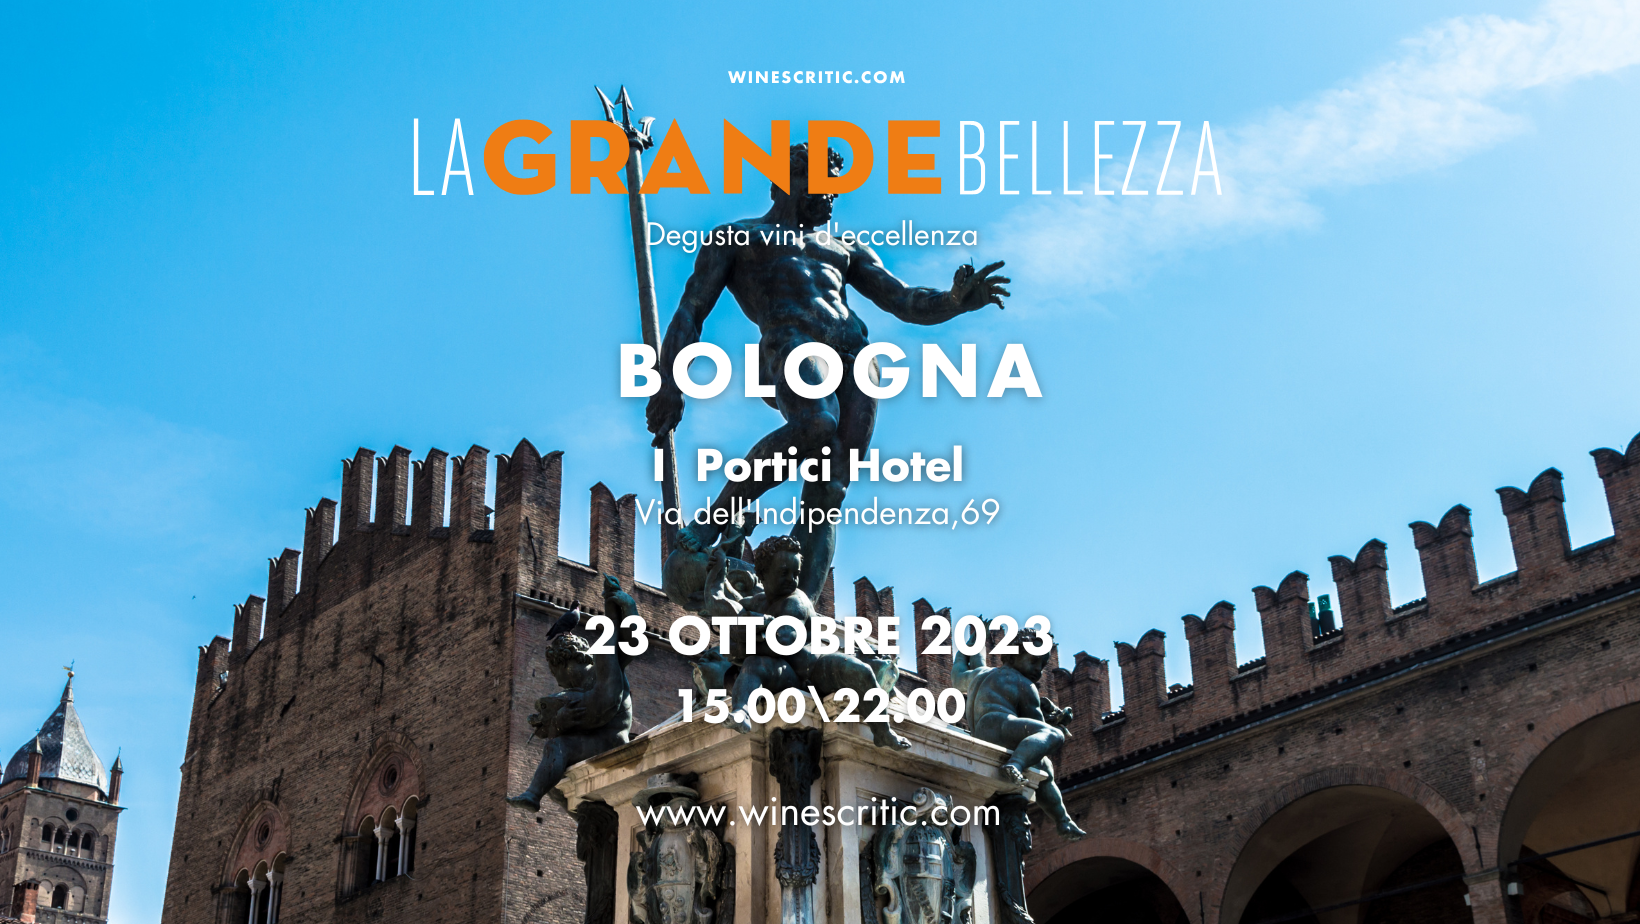 Locandina evento La Grande Bellezza 2023 Bologna